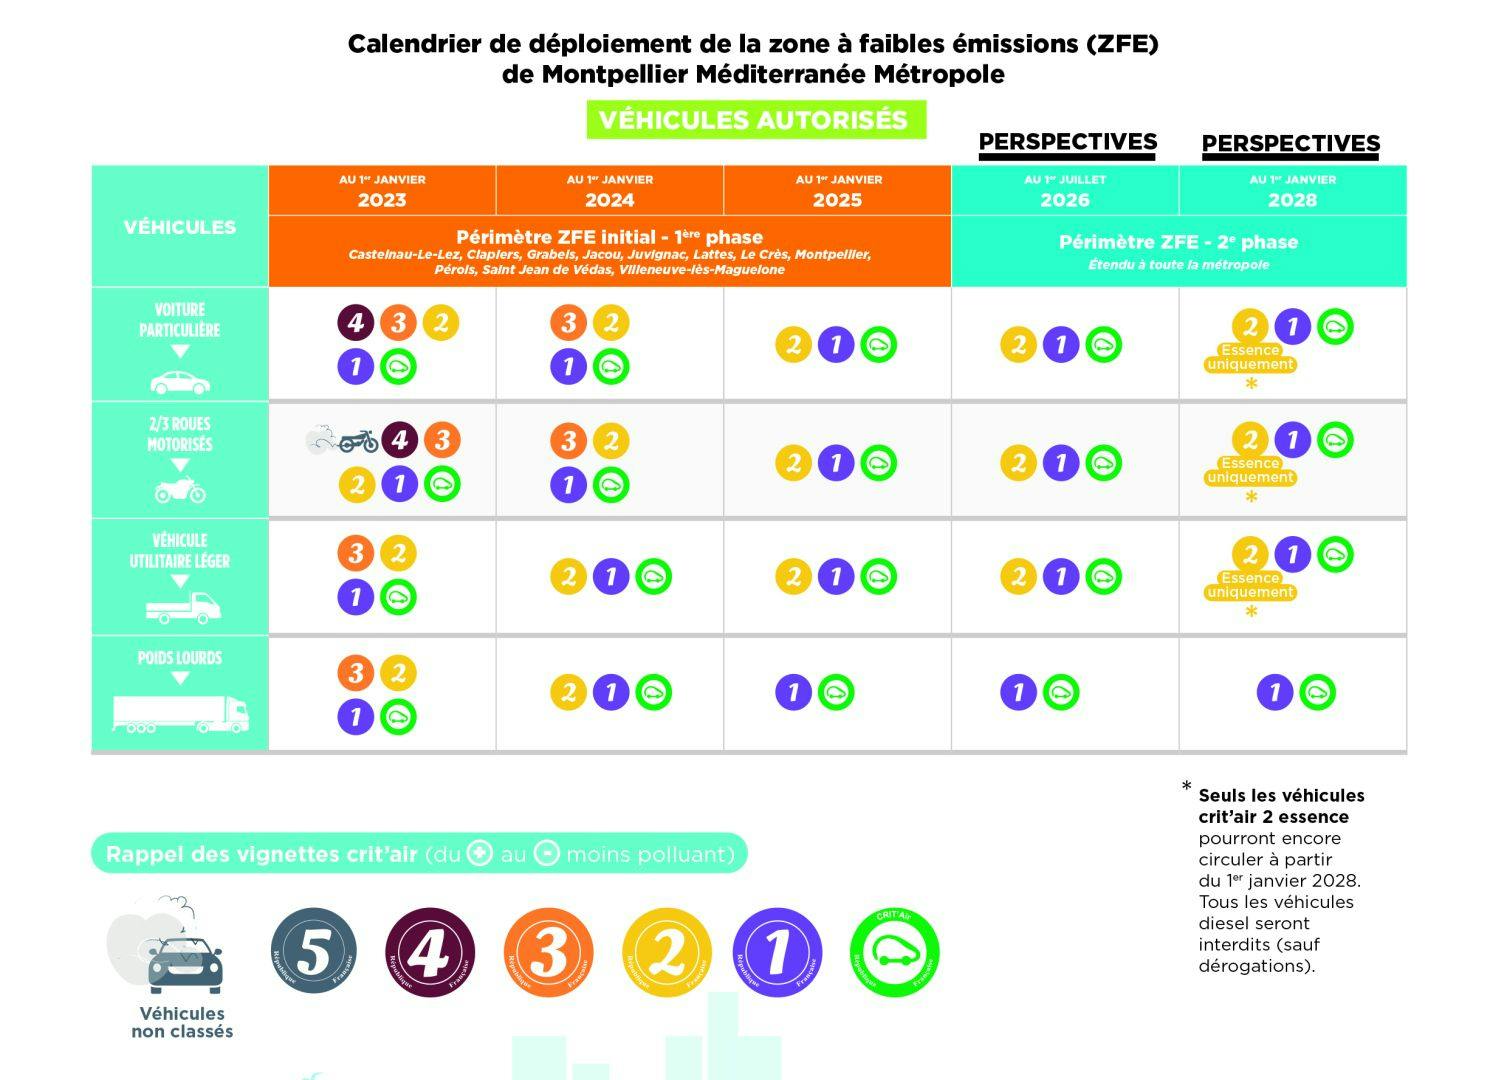 Le calendrier des restrictions de circulation dans la ZFE de Montpellier. ©Métropole de Montpellier